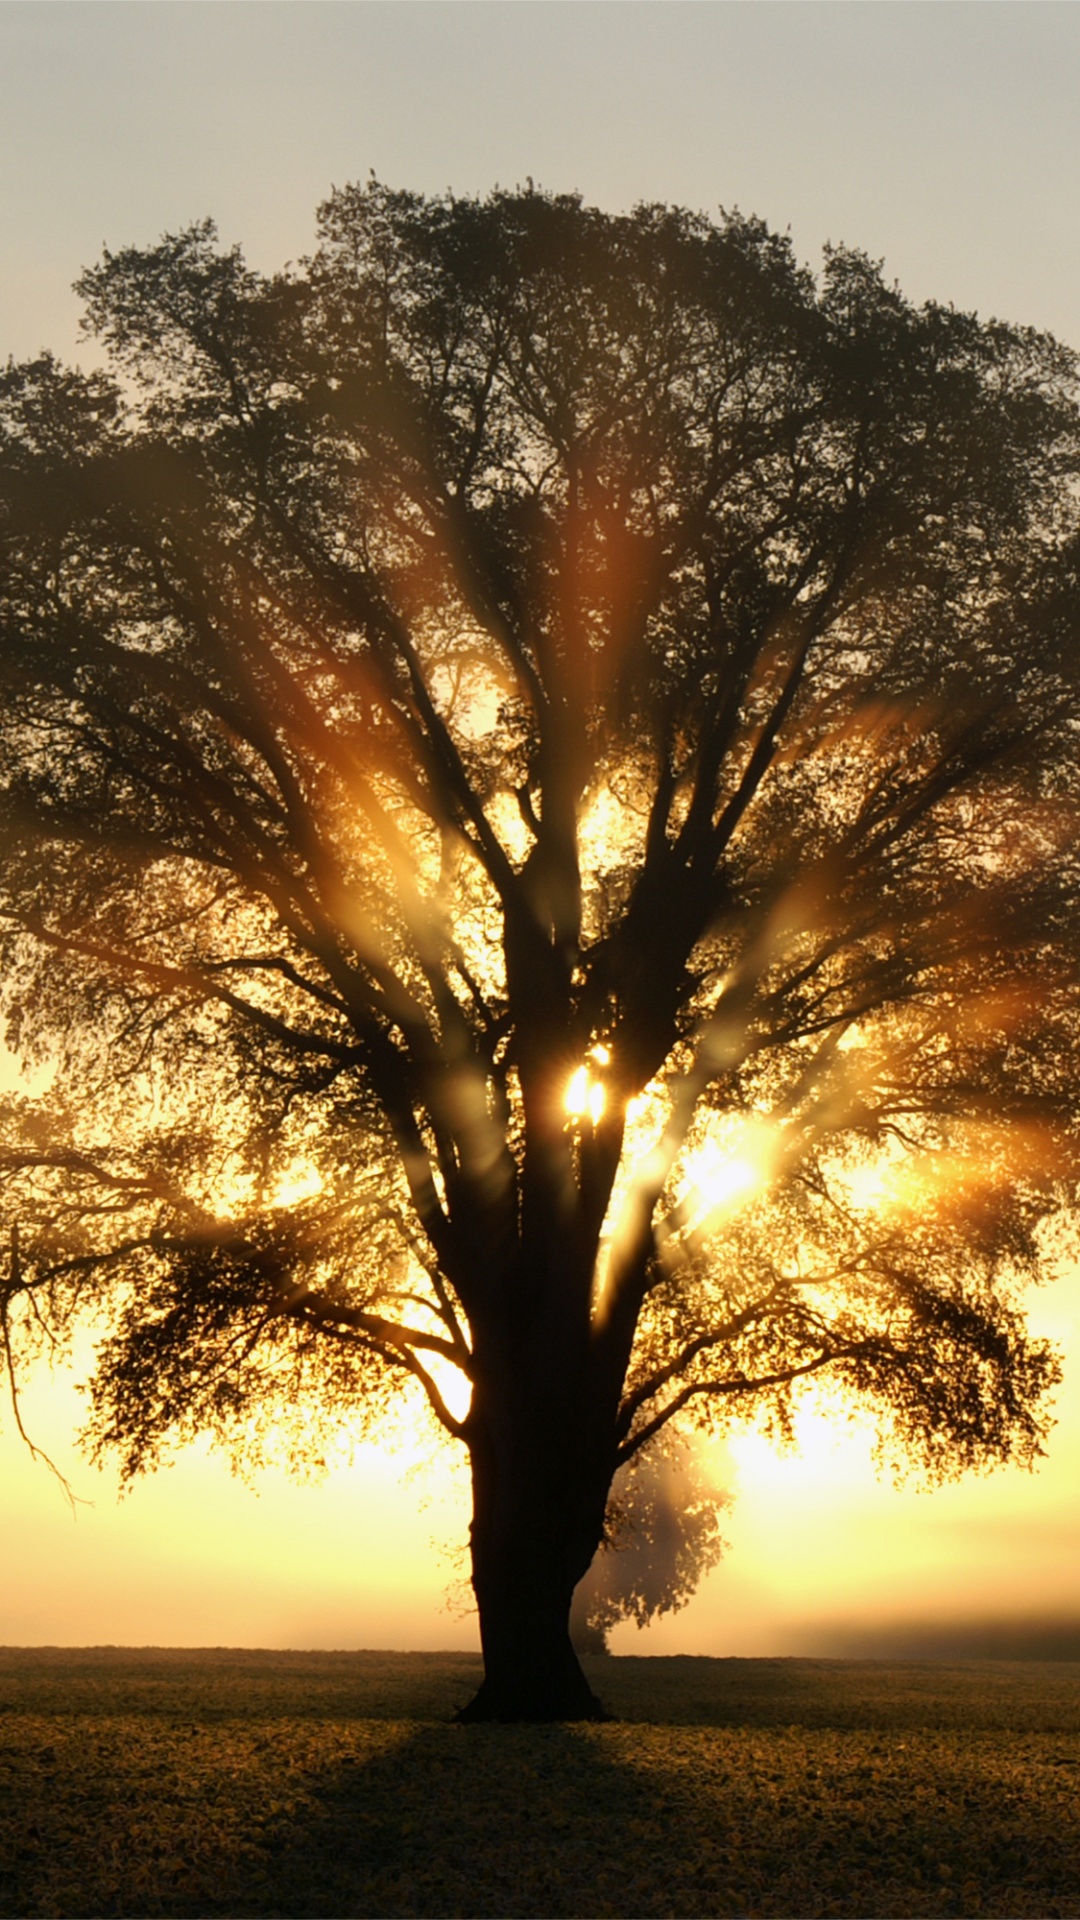 阳光, 橡树, 早上, 日出, 木本植物 壁纸 1080x1920 允许